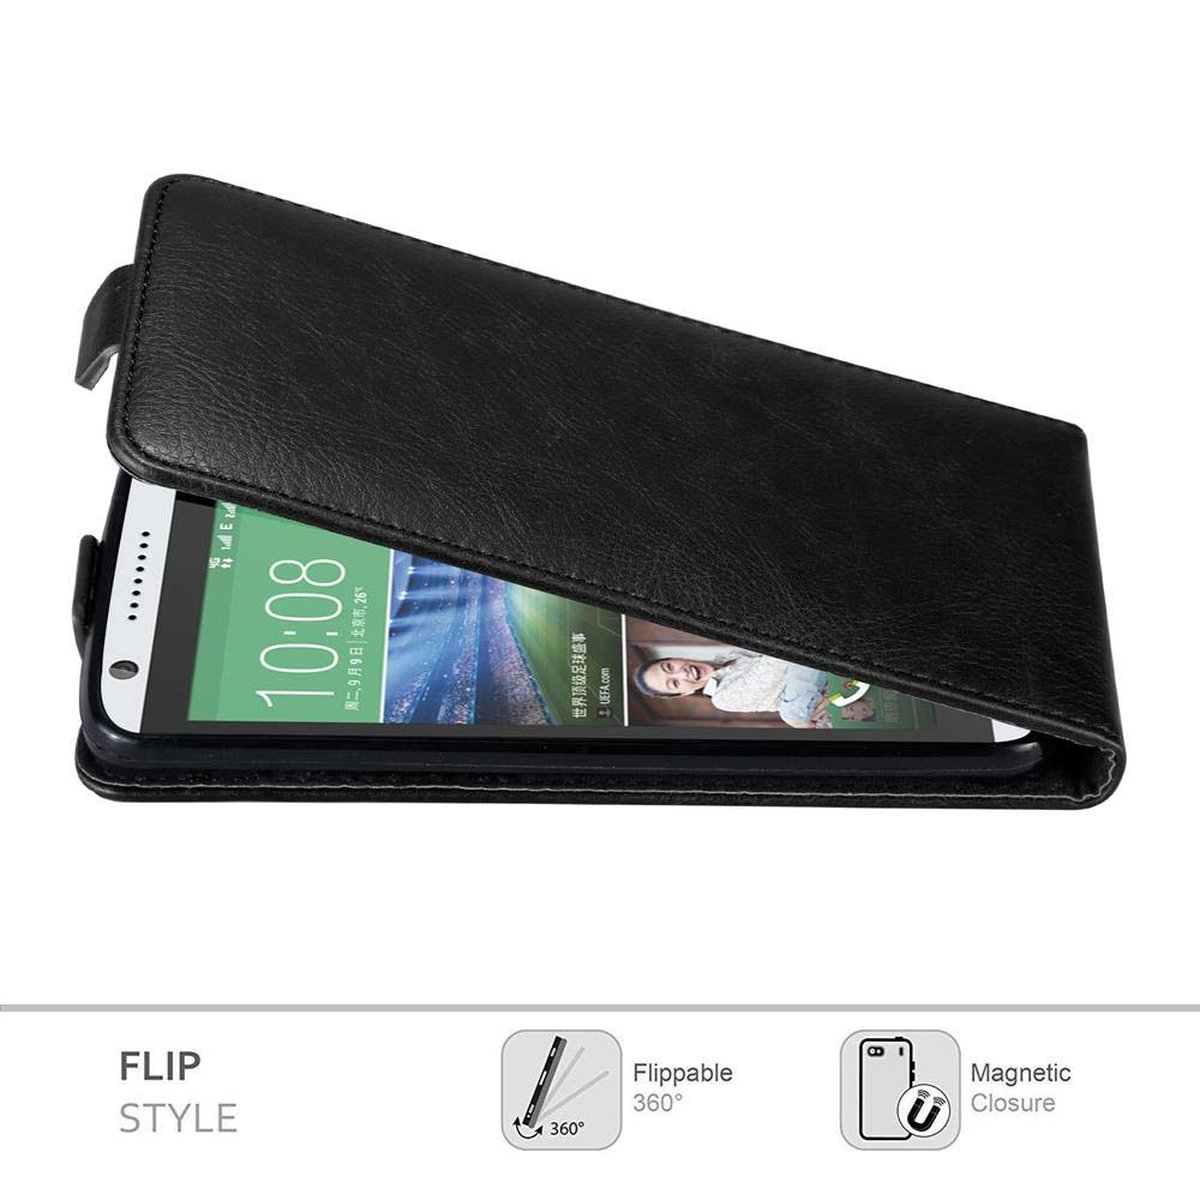 Flip Desire Style, NACHT HTC, 820, Hülle Flip CADORABO SCHWARZ Cover, im